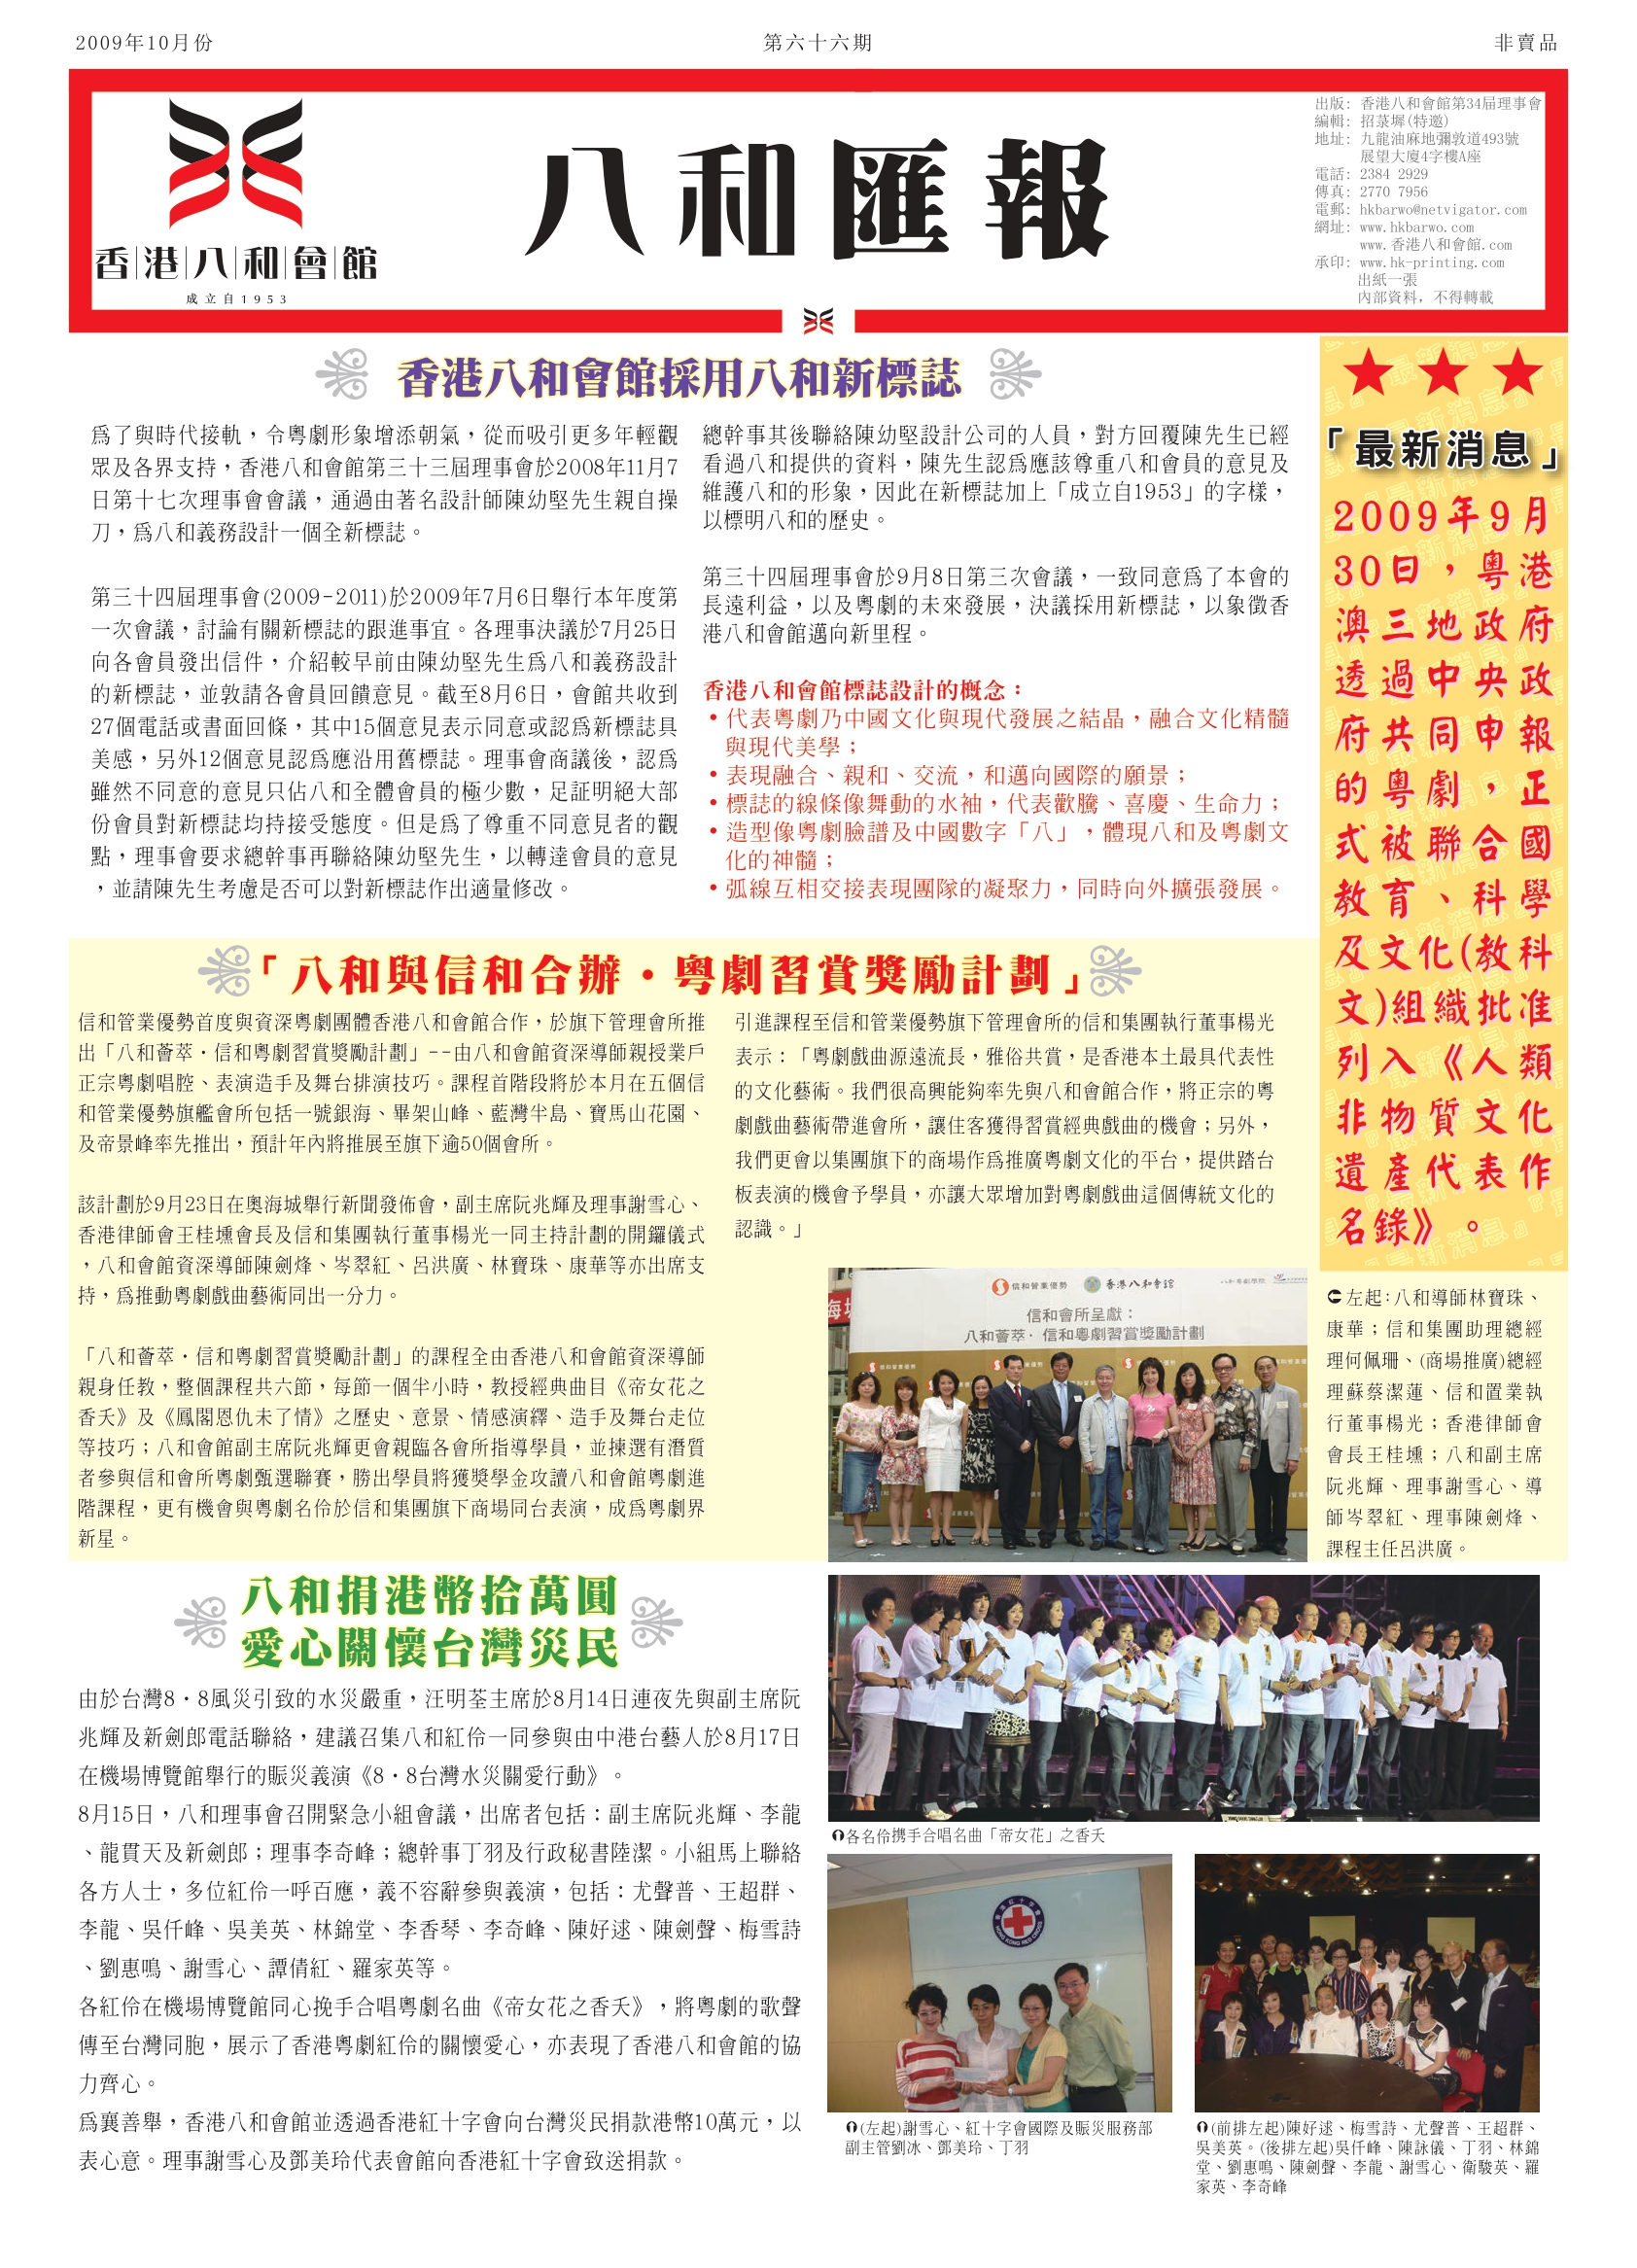 香港八和會館採用八和新標誌 | 八和與信和合辦•粵劇習賞獎勵計劃 | 八和捐港幣拾萬圓 愛心關懷台灣災民